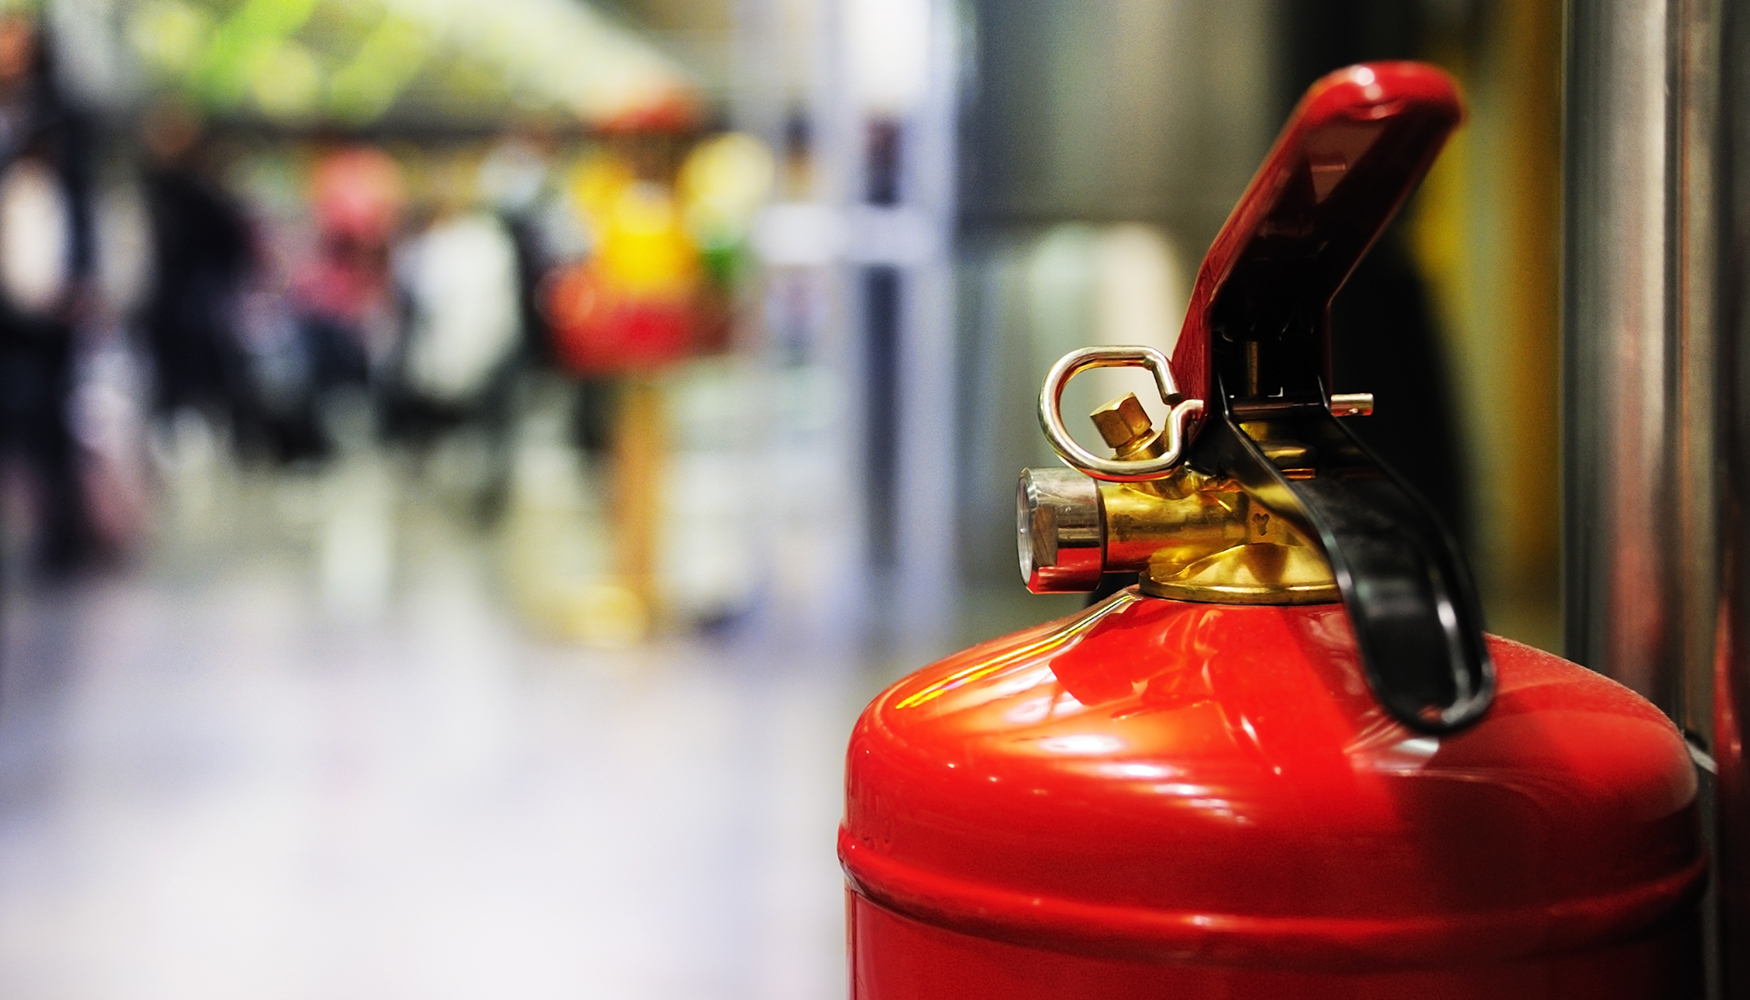 Salidas de emergencia e instalaciones de proteccin contra incendios, como extintores y BIEs, deben estar accesibles y sealizados...